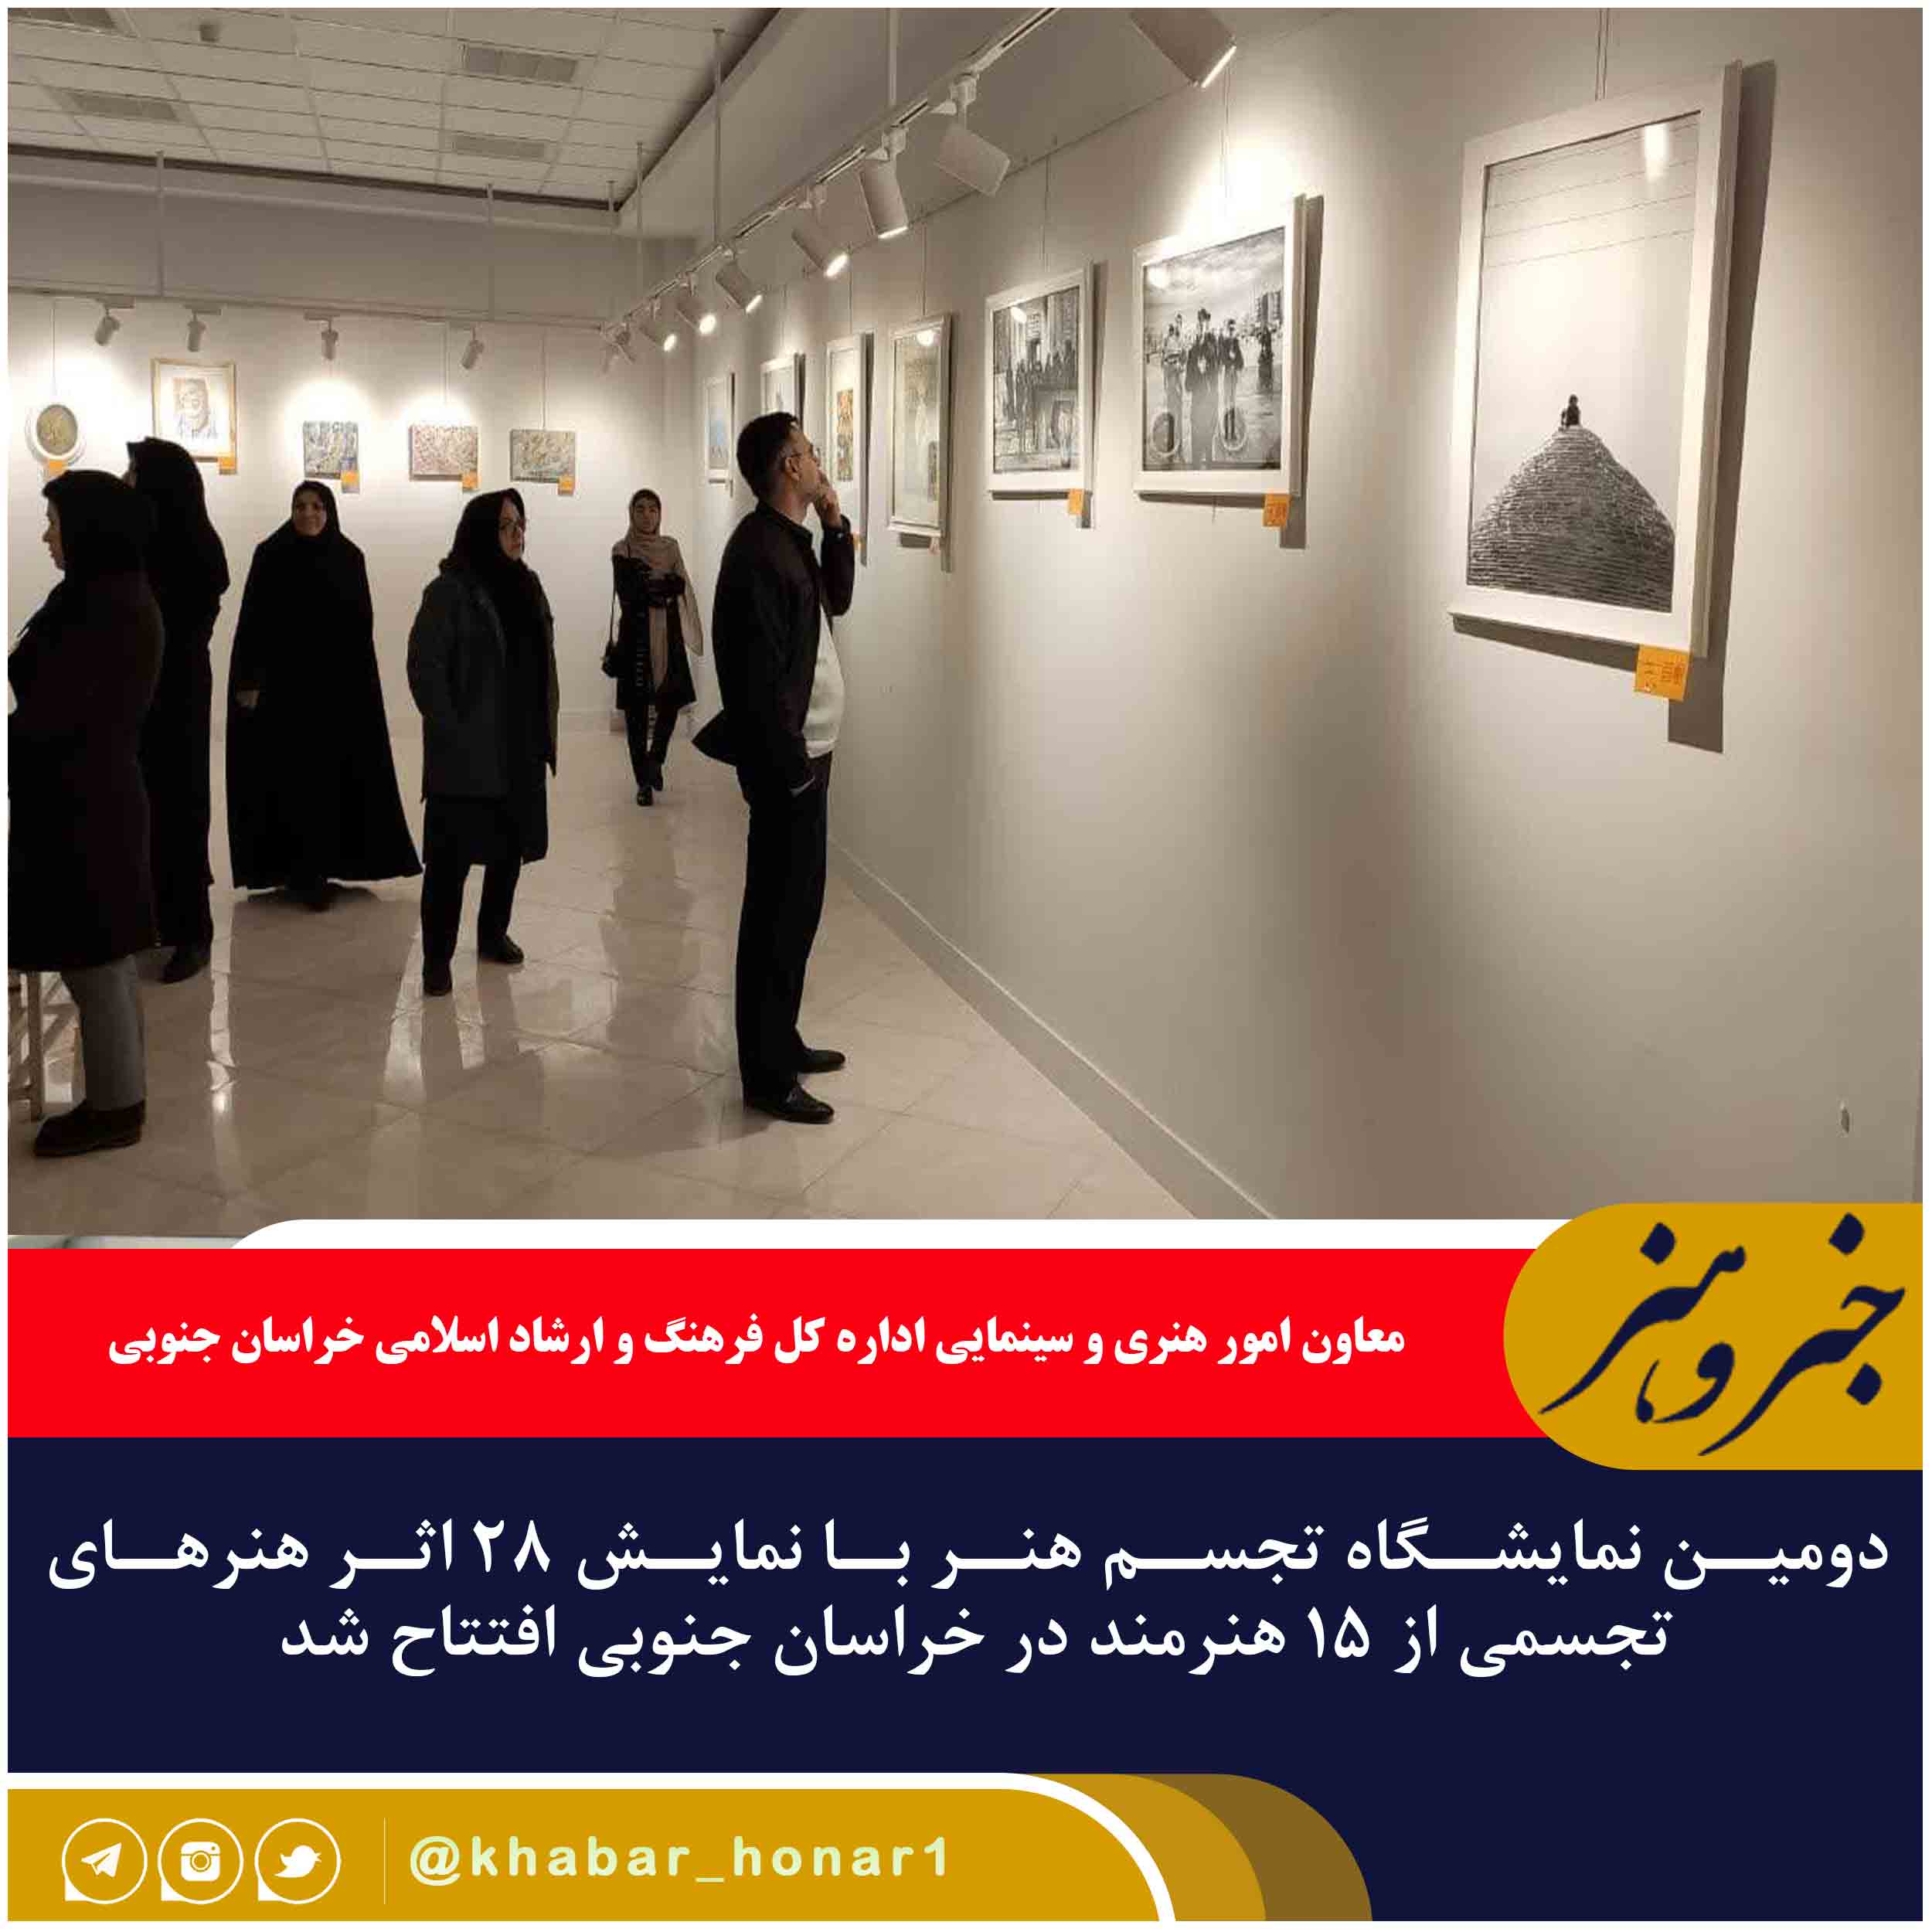 دومین نمایشگاه تجسم هنر با نمایش ۲۸ اثر هنرهای تجسمی از ۱۵ هنرمند در خراسان جنوبی افتتاح شد